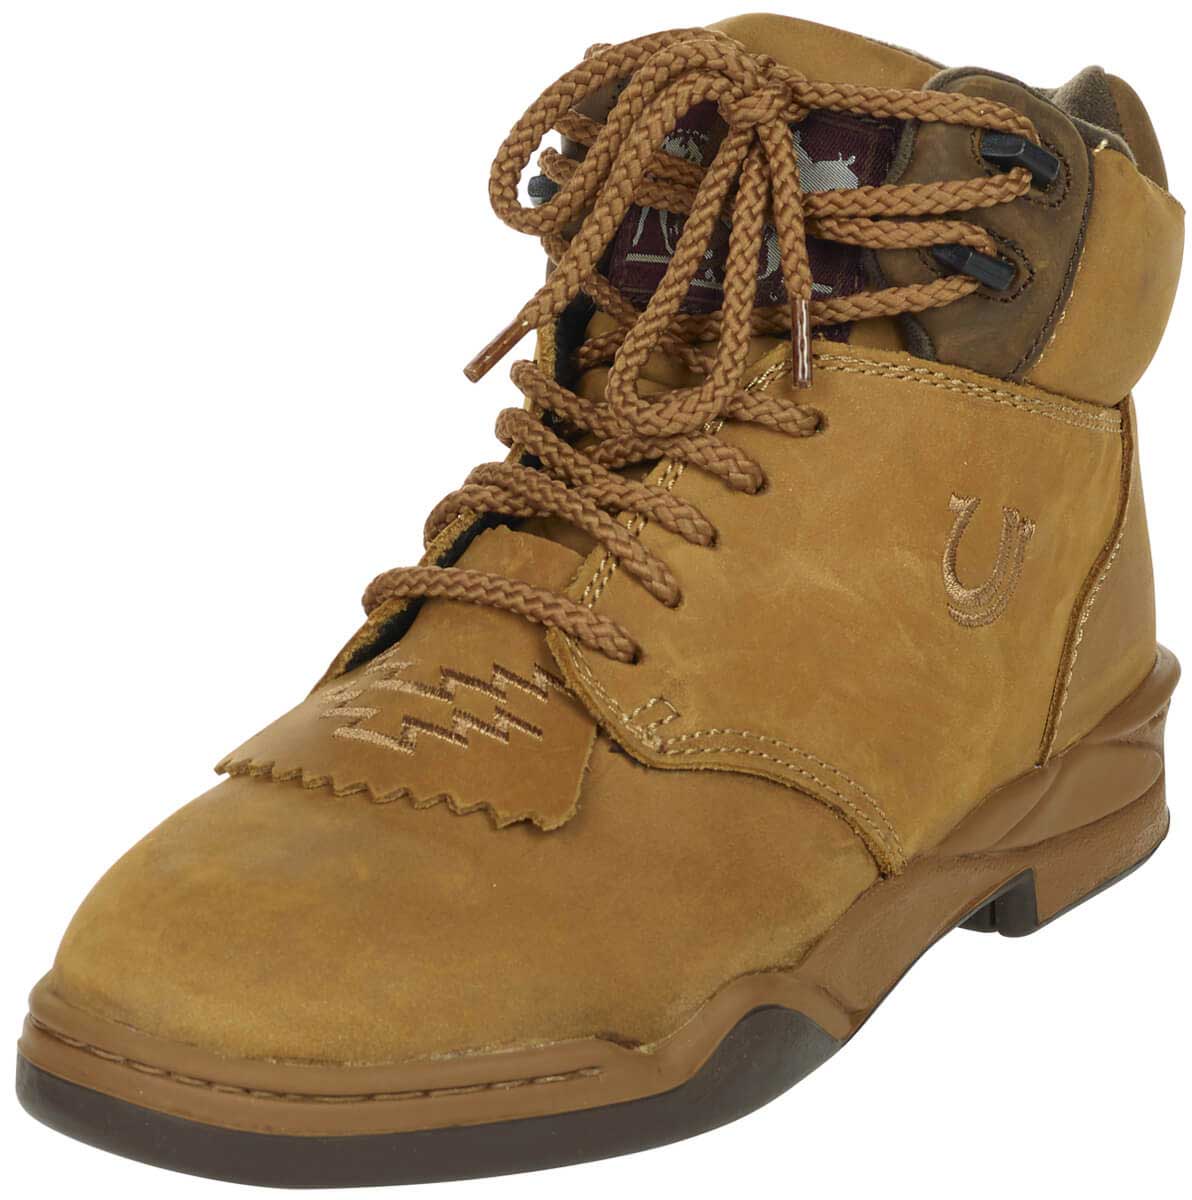 roper men's boots